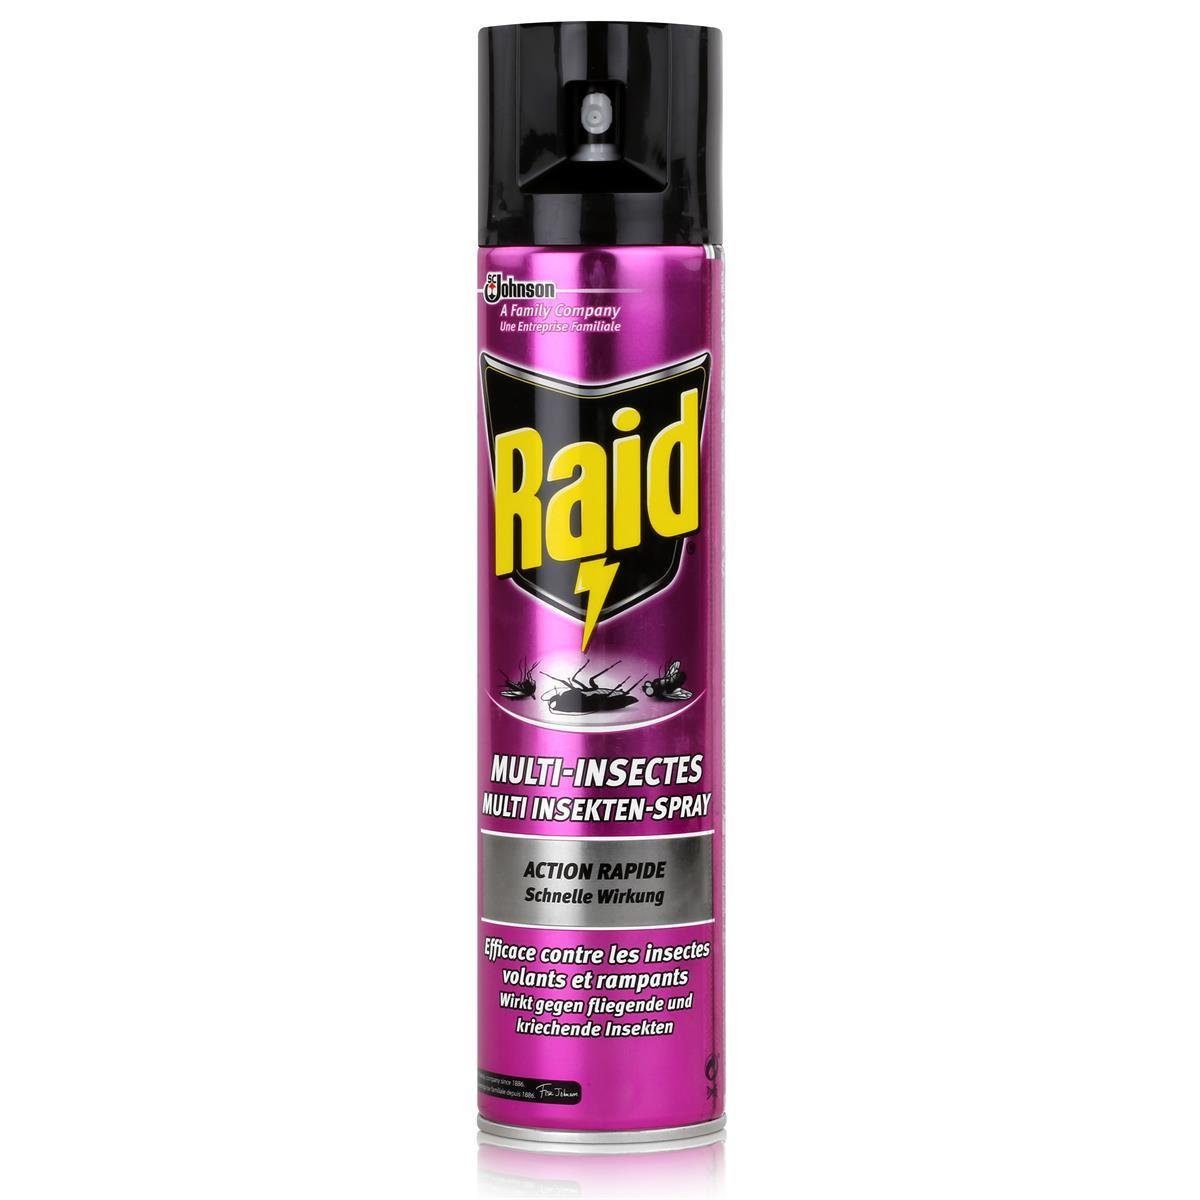 Raid Insektenfalle Raid Multi Insekten-Spray Frischer Duft 400 ml - Wirkt sicher und schn